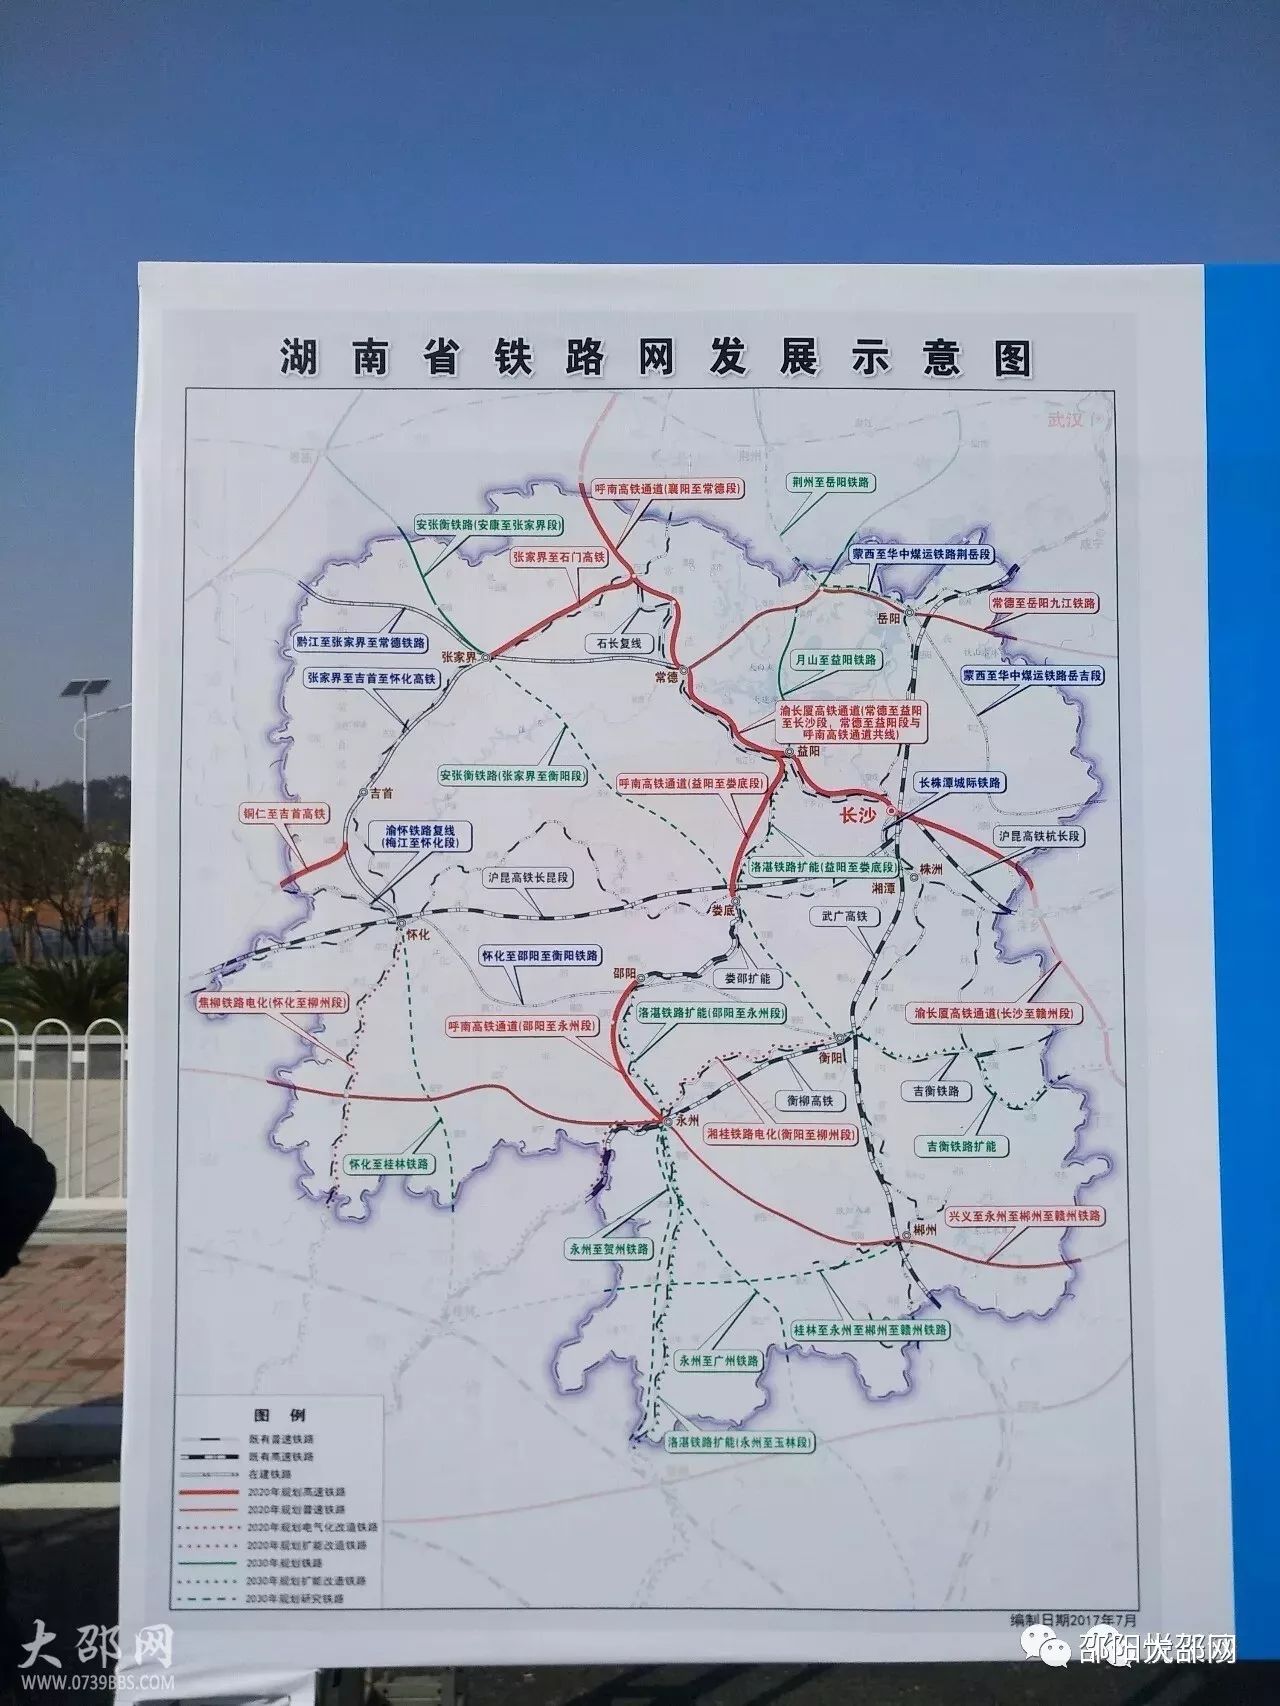 在长沙西站公布的湖南省最新的铁路规划图上,邵永高铁被纳入十三五